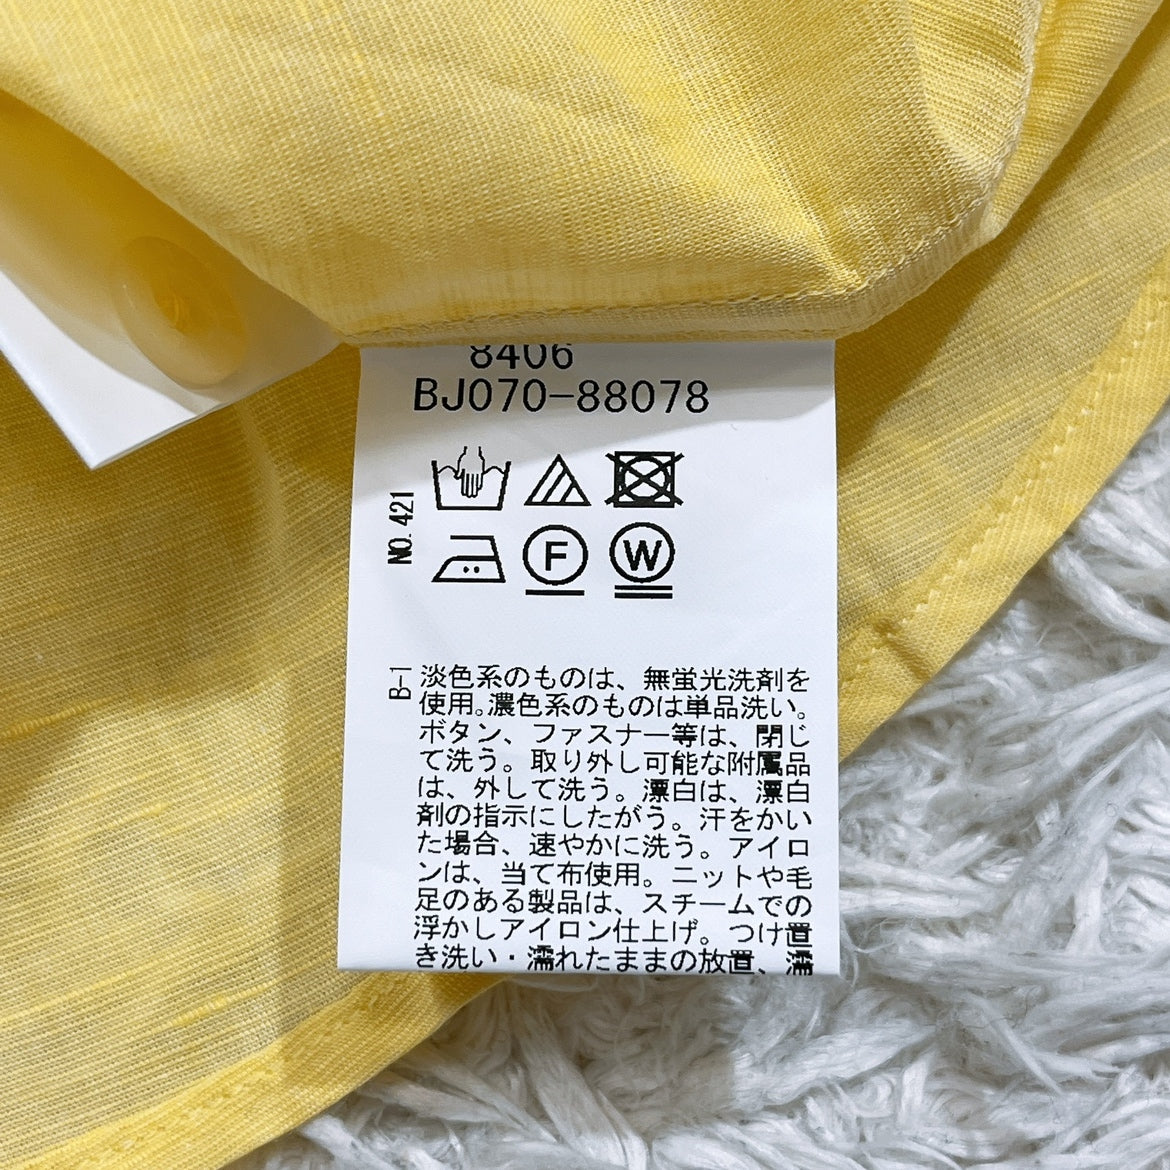 新品 メンズ2 M TAKEOKIKUCHI シャツ イエロー 黄色 長袖 薄手 未使用 タグ付き 袖ボタン タケオキクチ 【13565】